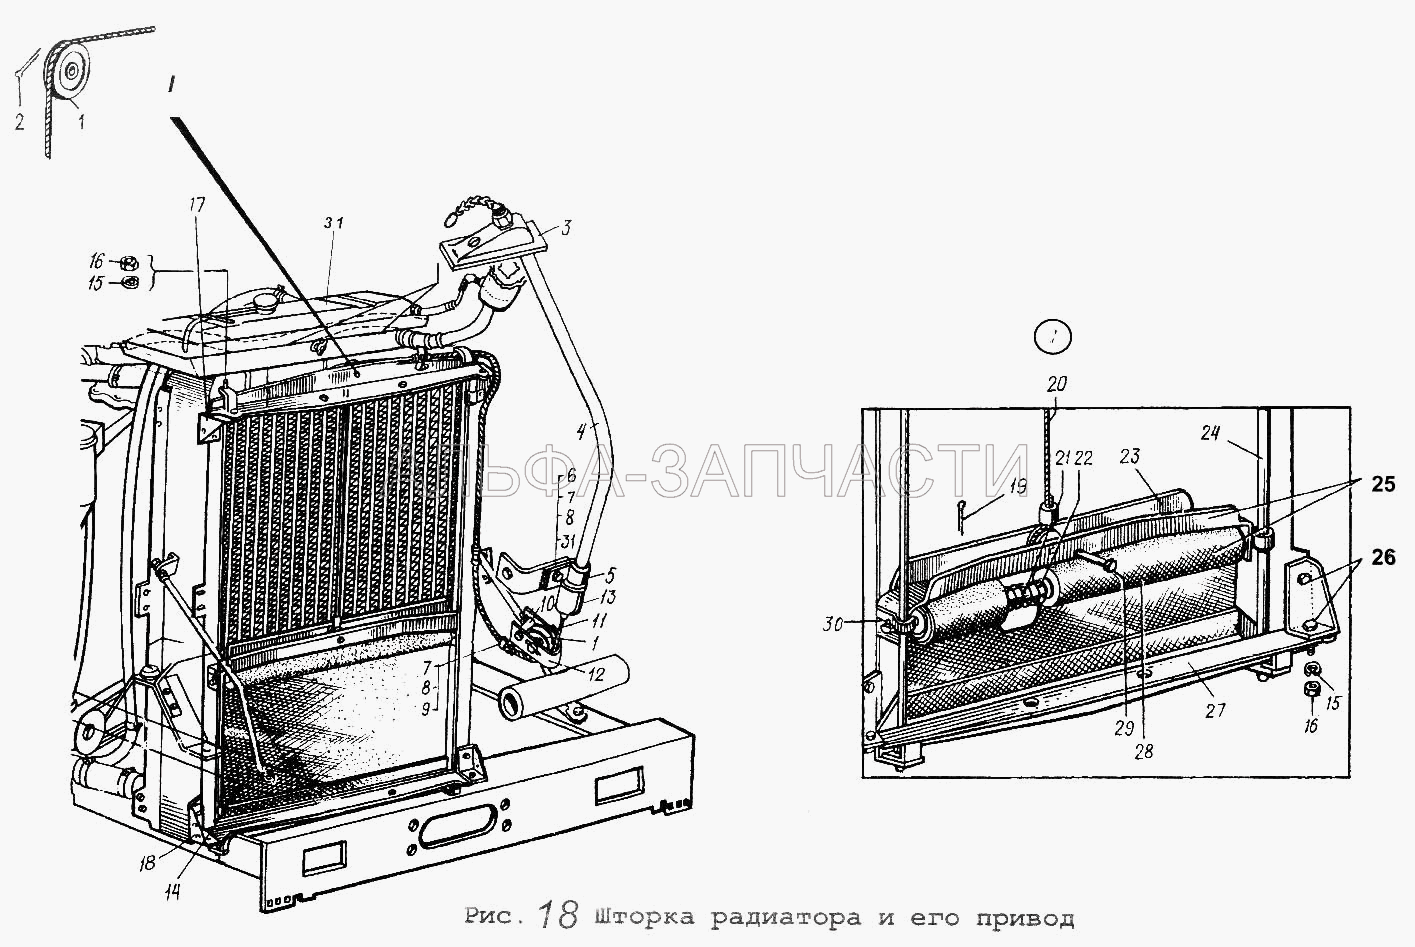 Шторка радиатора и его привод (5320-3724085 Колпачок защитный штекерного соединения проводов) 